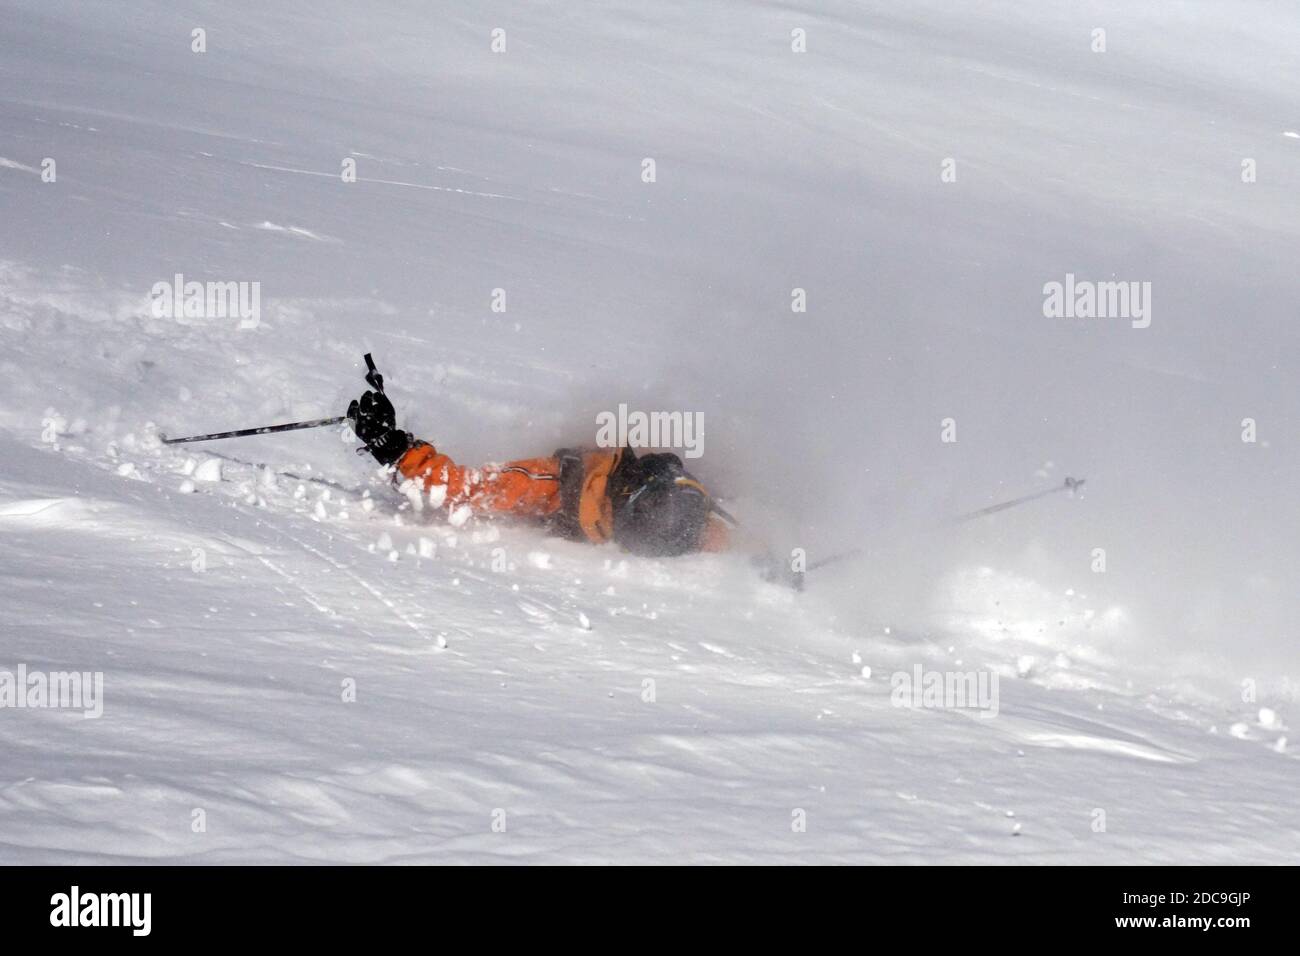 08.02.2019, Schruns, Vorarlberg, Autriche - personne tombe pendant le ski. 00S190208D557CAROEX.JPG [AUTORISATION DU MODÈLE : OUI, AUTORISATION DU PROPRIÉTAIRE : NON (c) image de CARO Banque D'Images